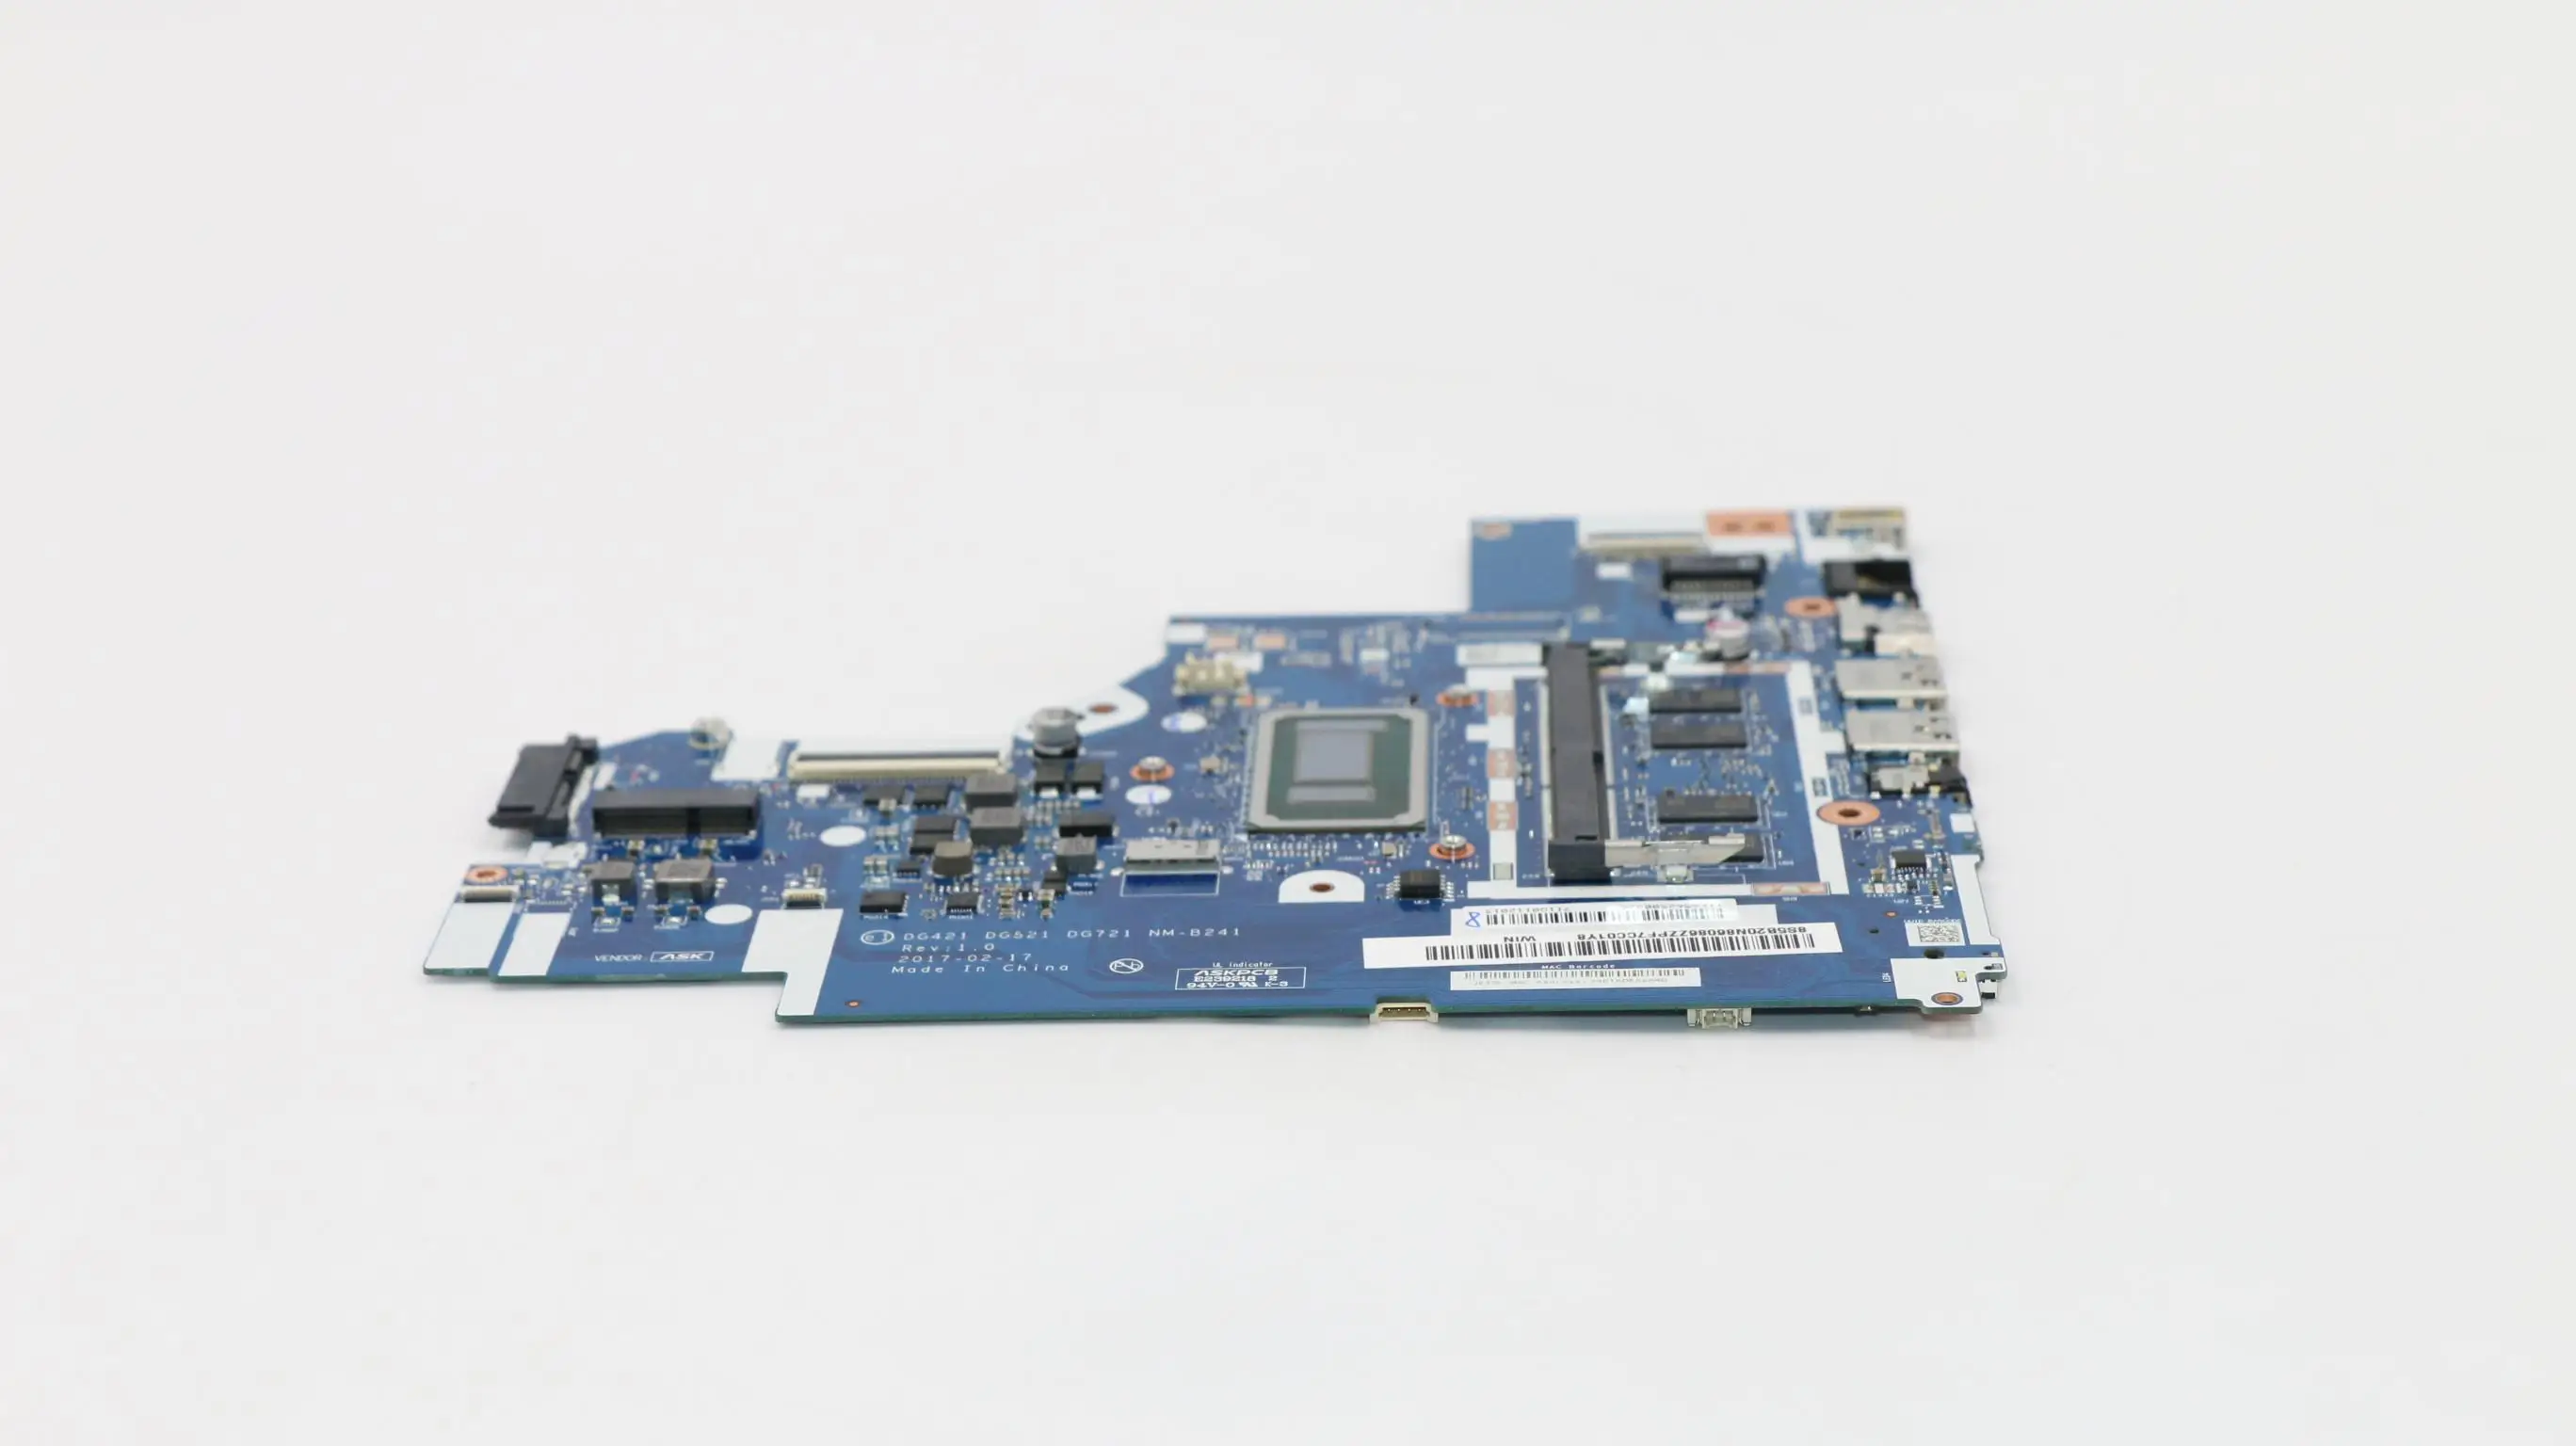 SN NM-B241 FRU 5B20R16689 процесор I36006 I37130 I38130 I57200 I58250 I77500 I78550 Модел DG421 521 721 дънна платка ideapad 330-15IKB